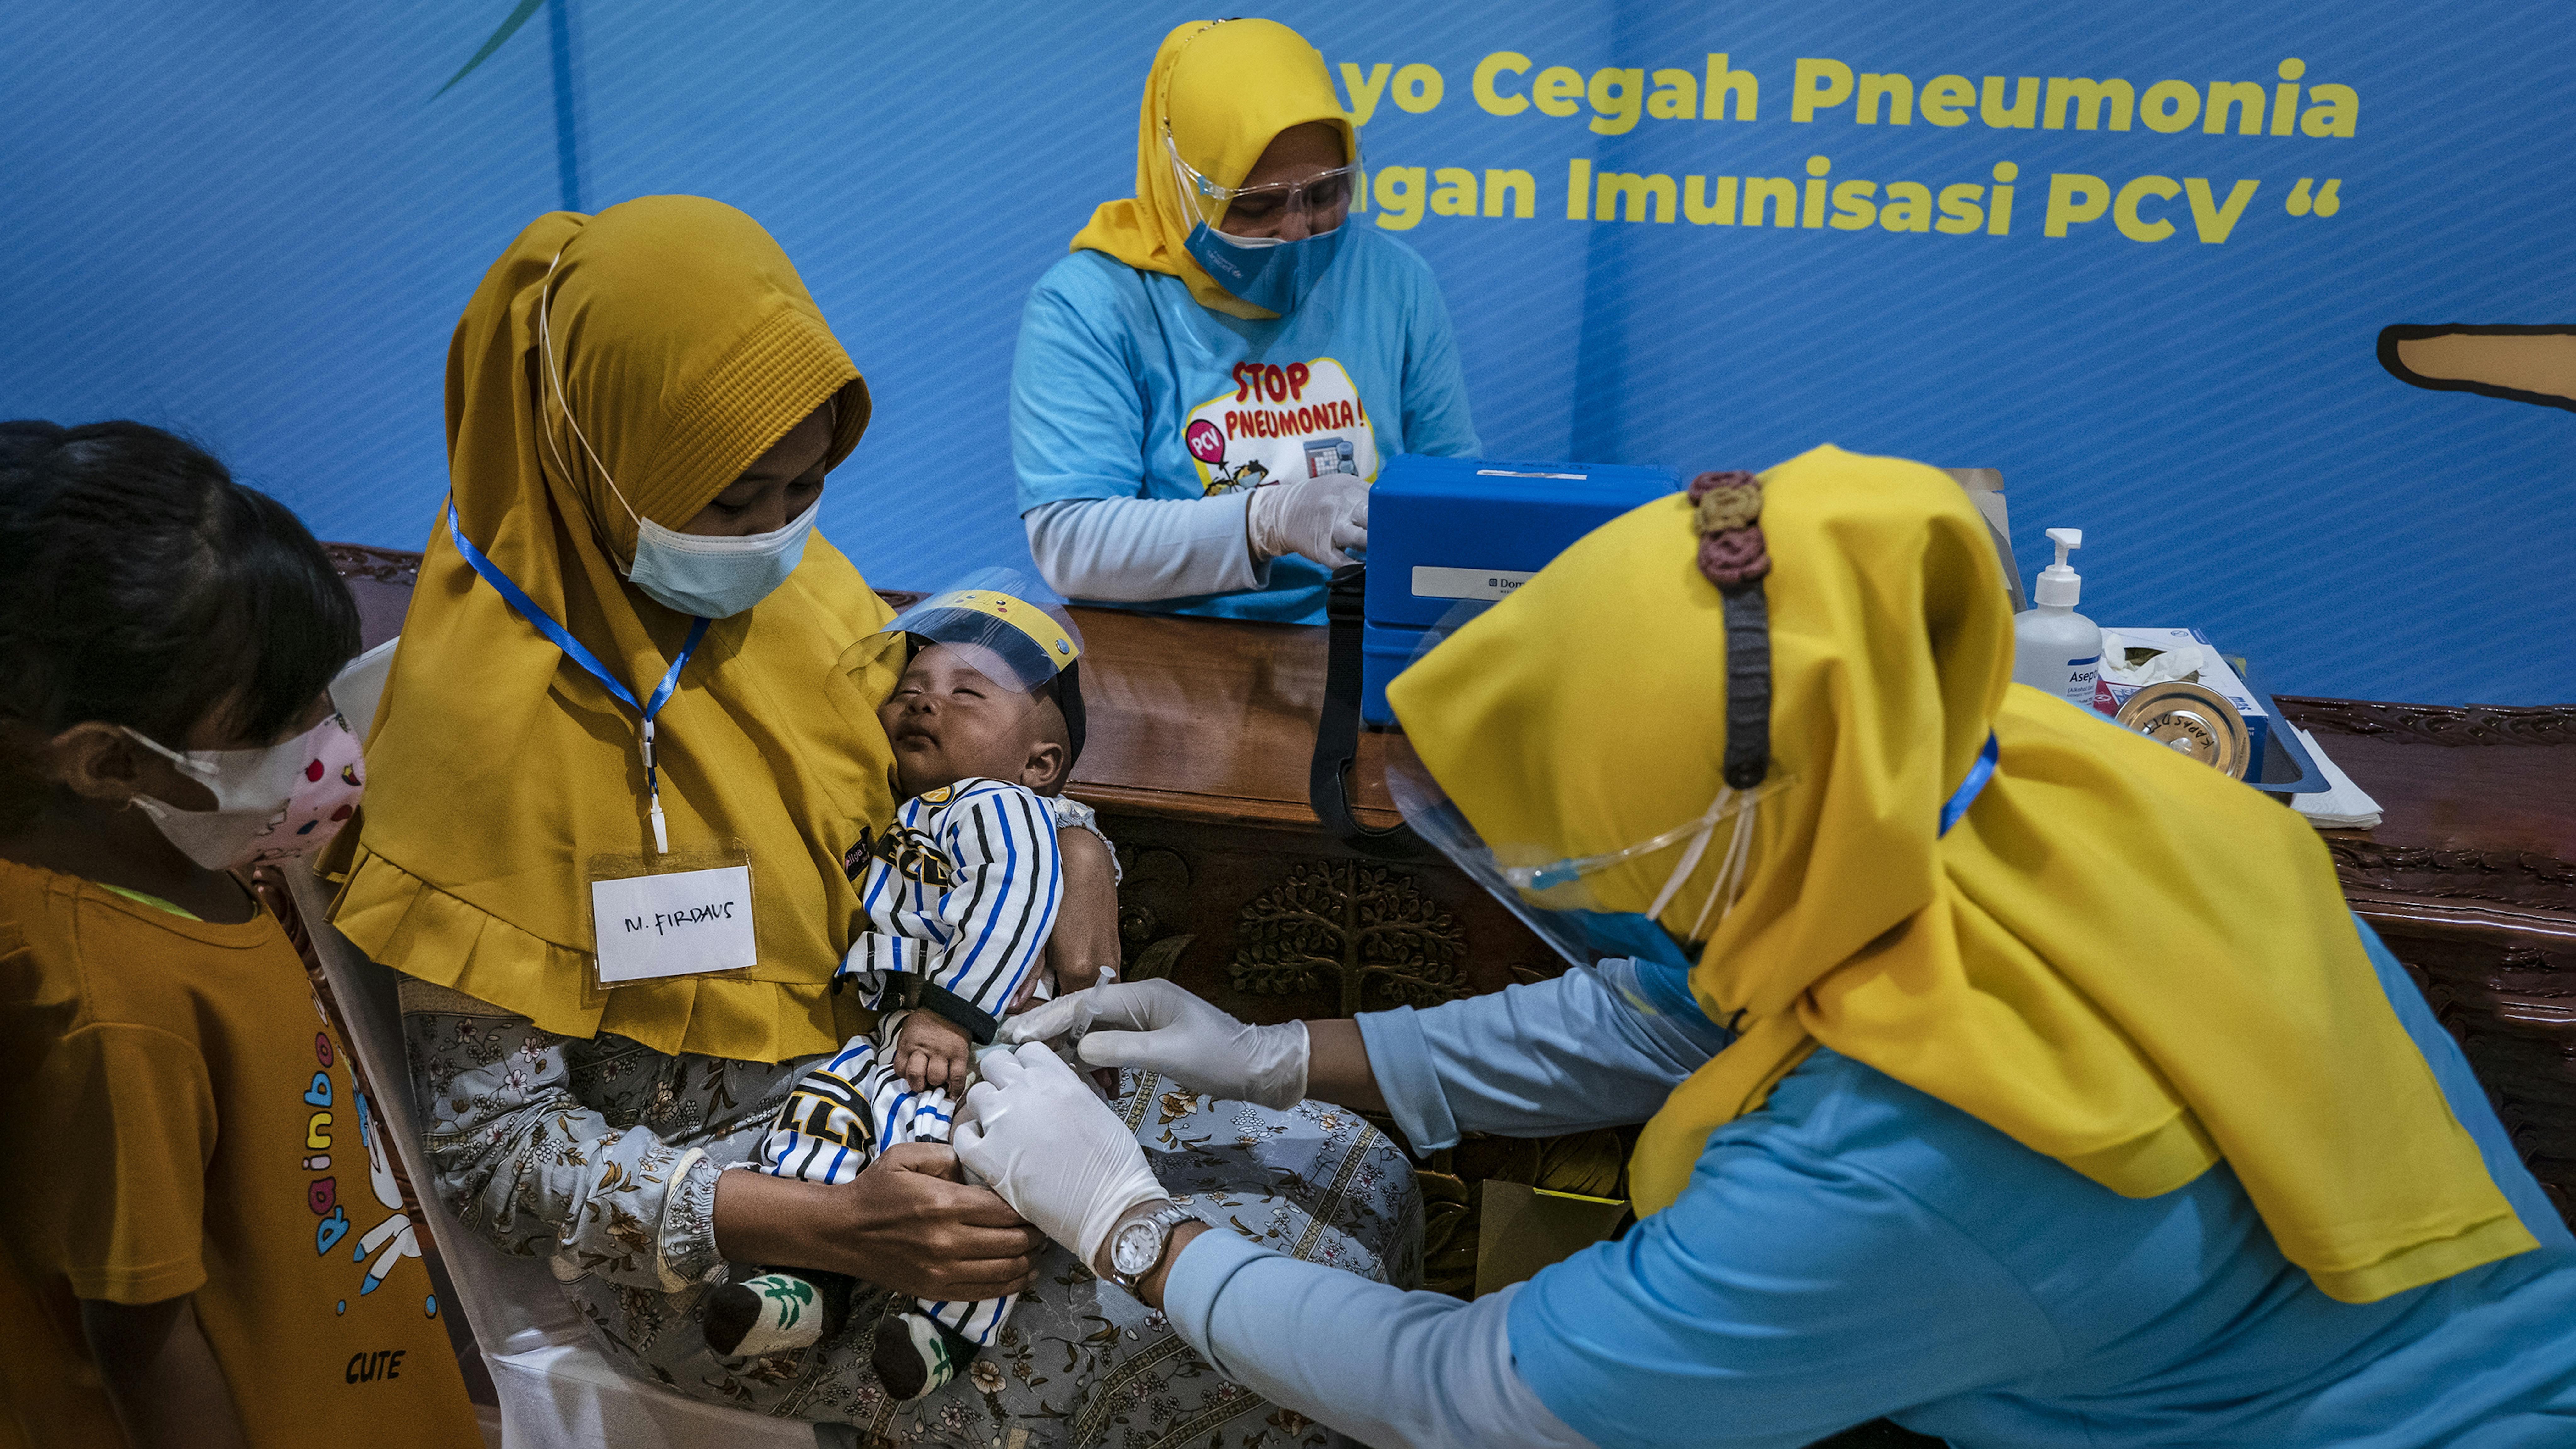 Indonesia, Uul Masula, 28 anni, tiene in braccio il suo bambino Firdaus mentre riceve una dose del vaccino pneumococcico